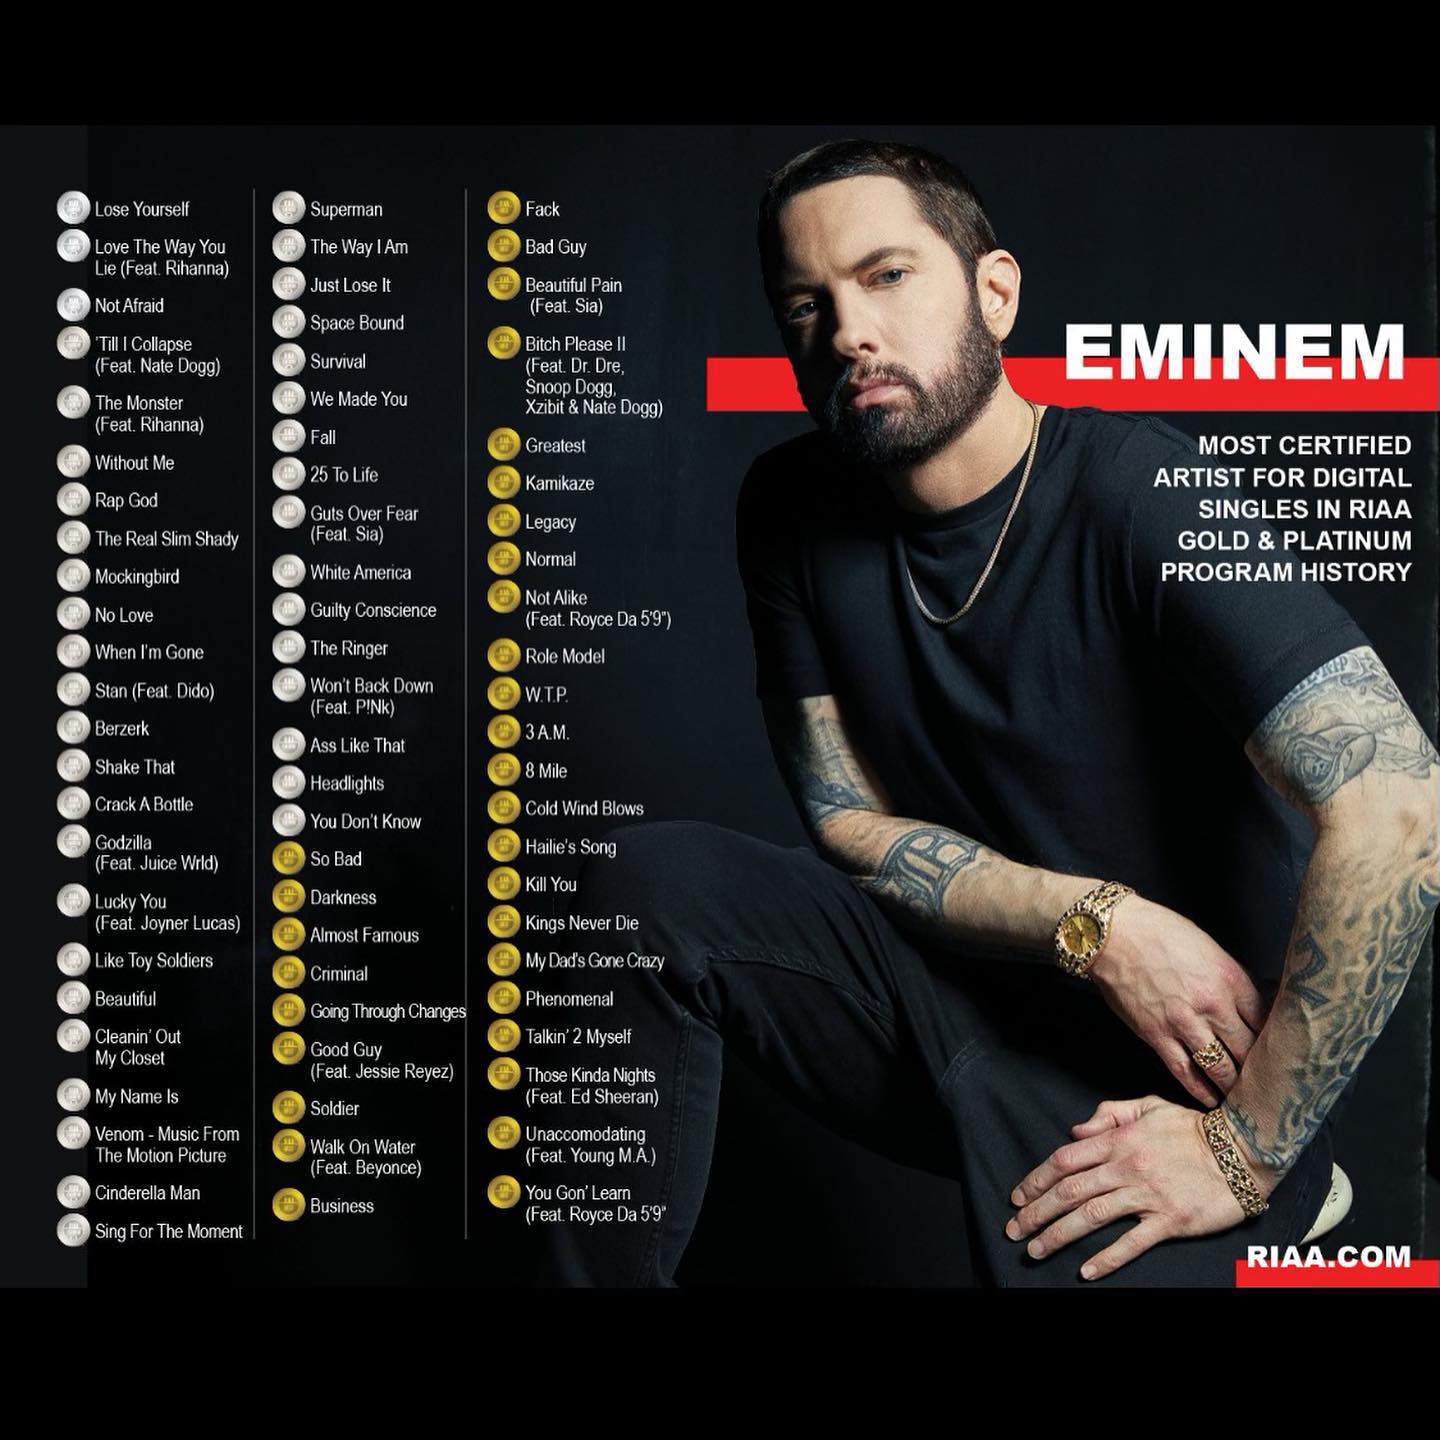 Eminem inarrestabile, diventa l'artista con più certificazioni singole nella storia della RIIA